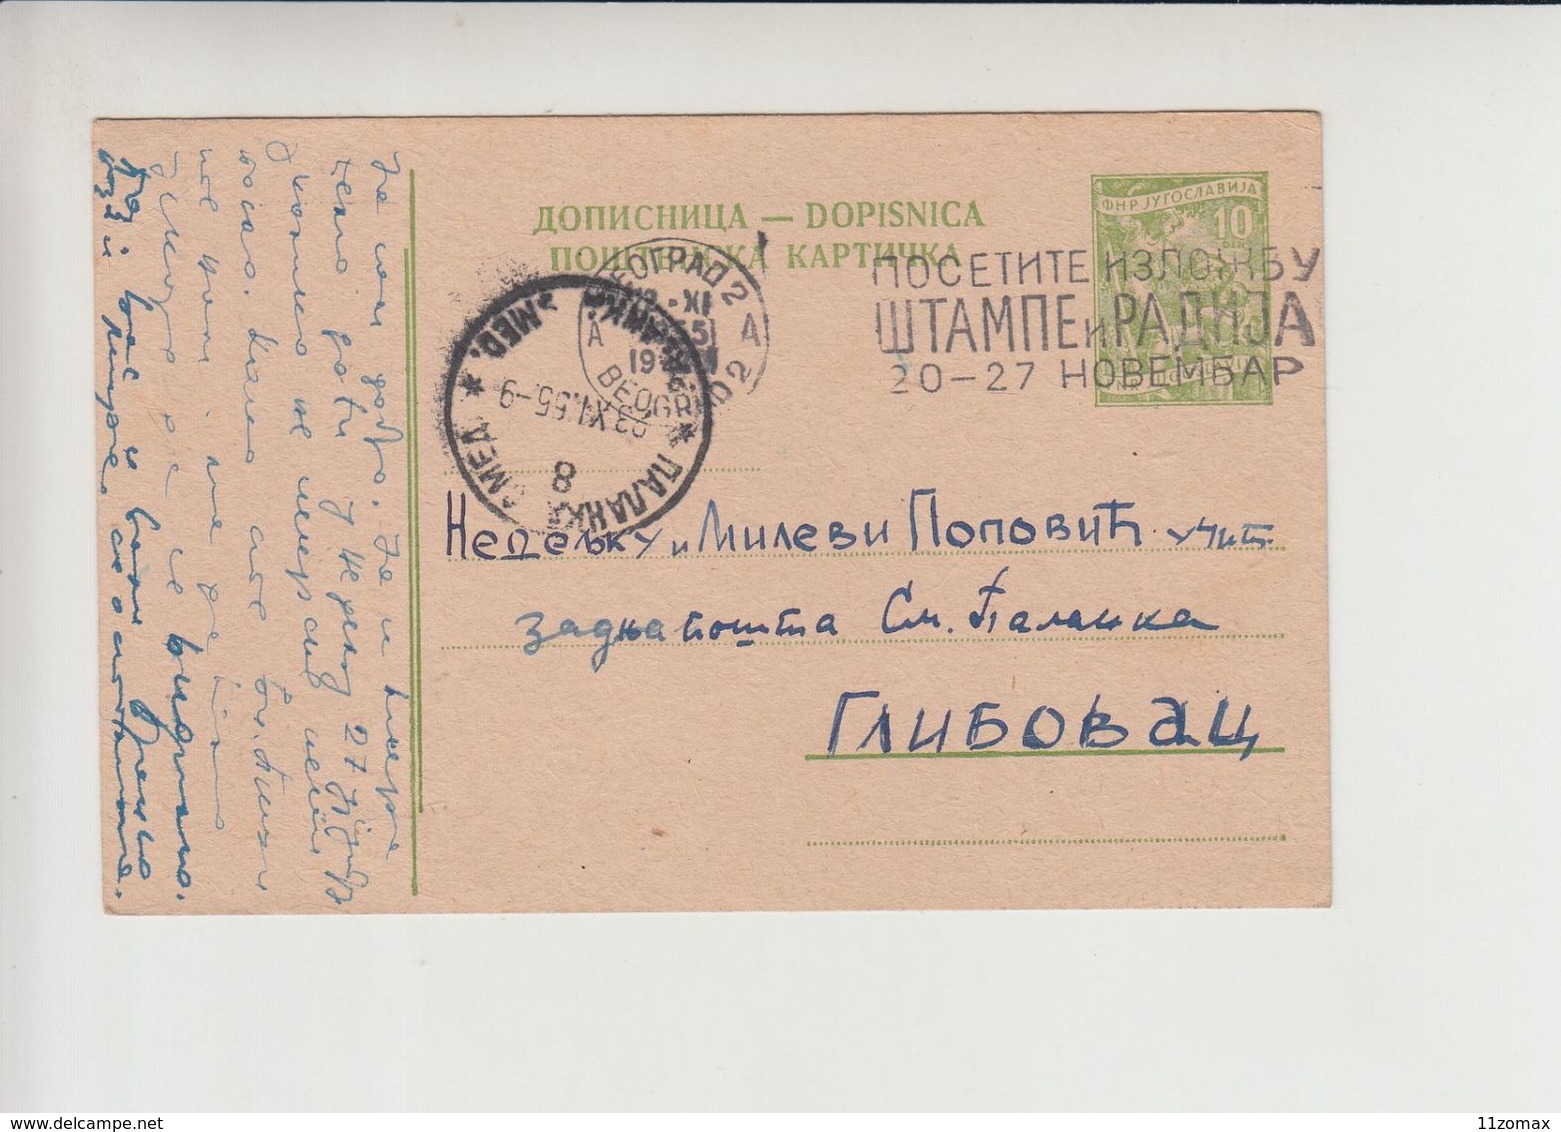 Serbia FLAM Beograd "POSETITE IZLOZBU STAMPE I RADIJA..." 1955 Nice Cancelation (fl486) RR - Storia Postale